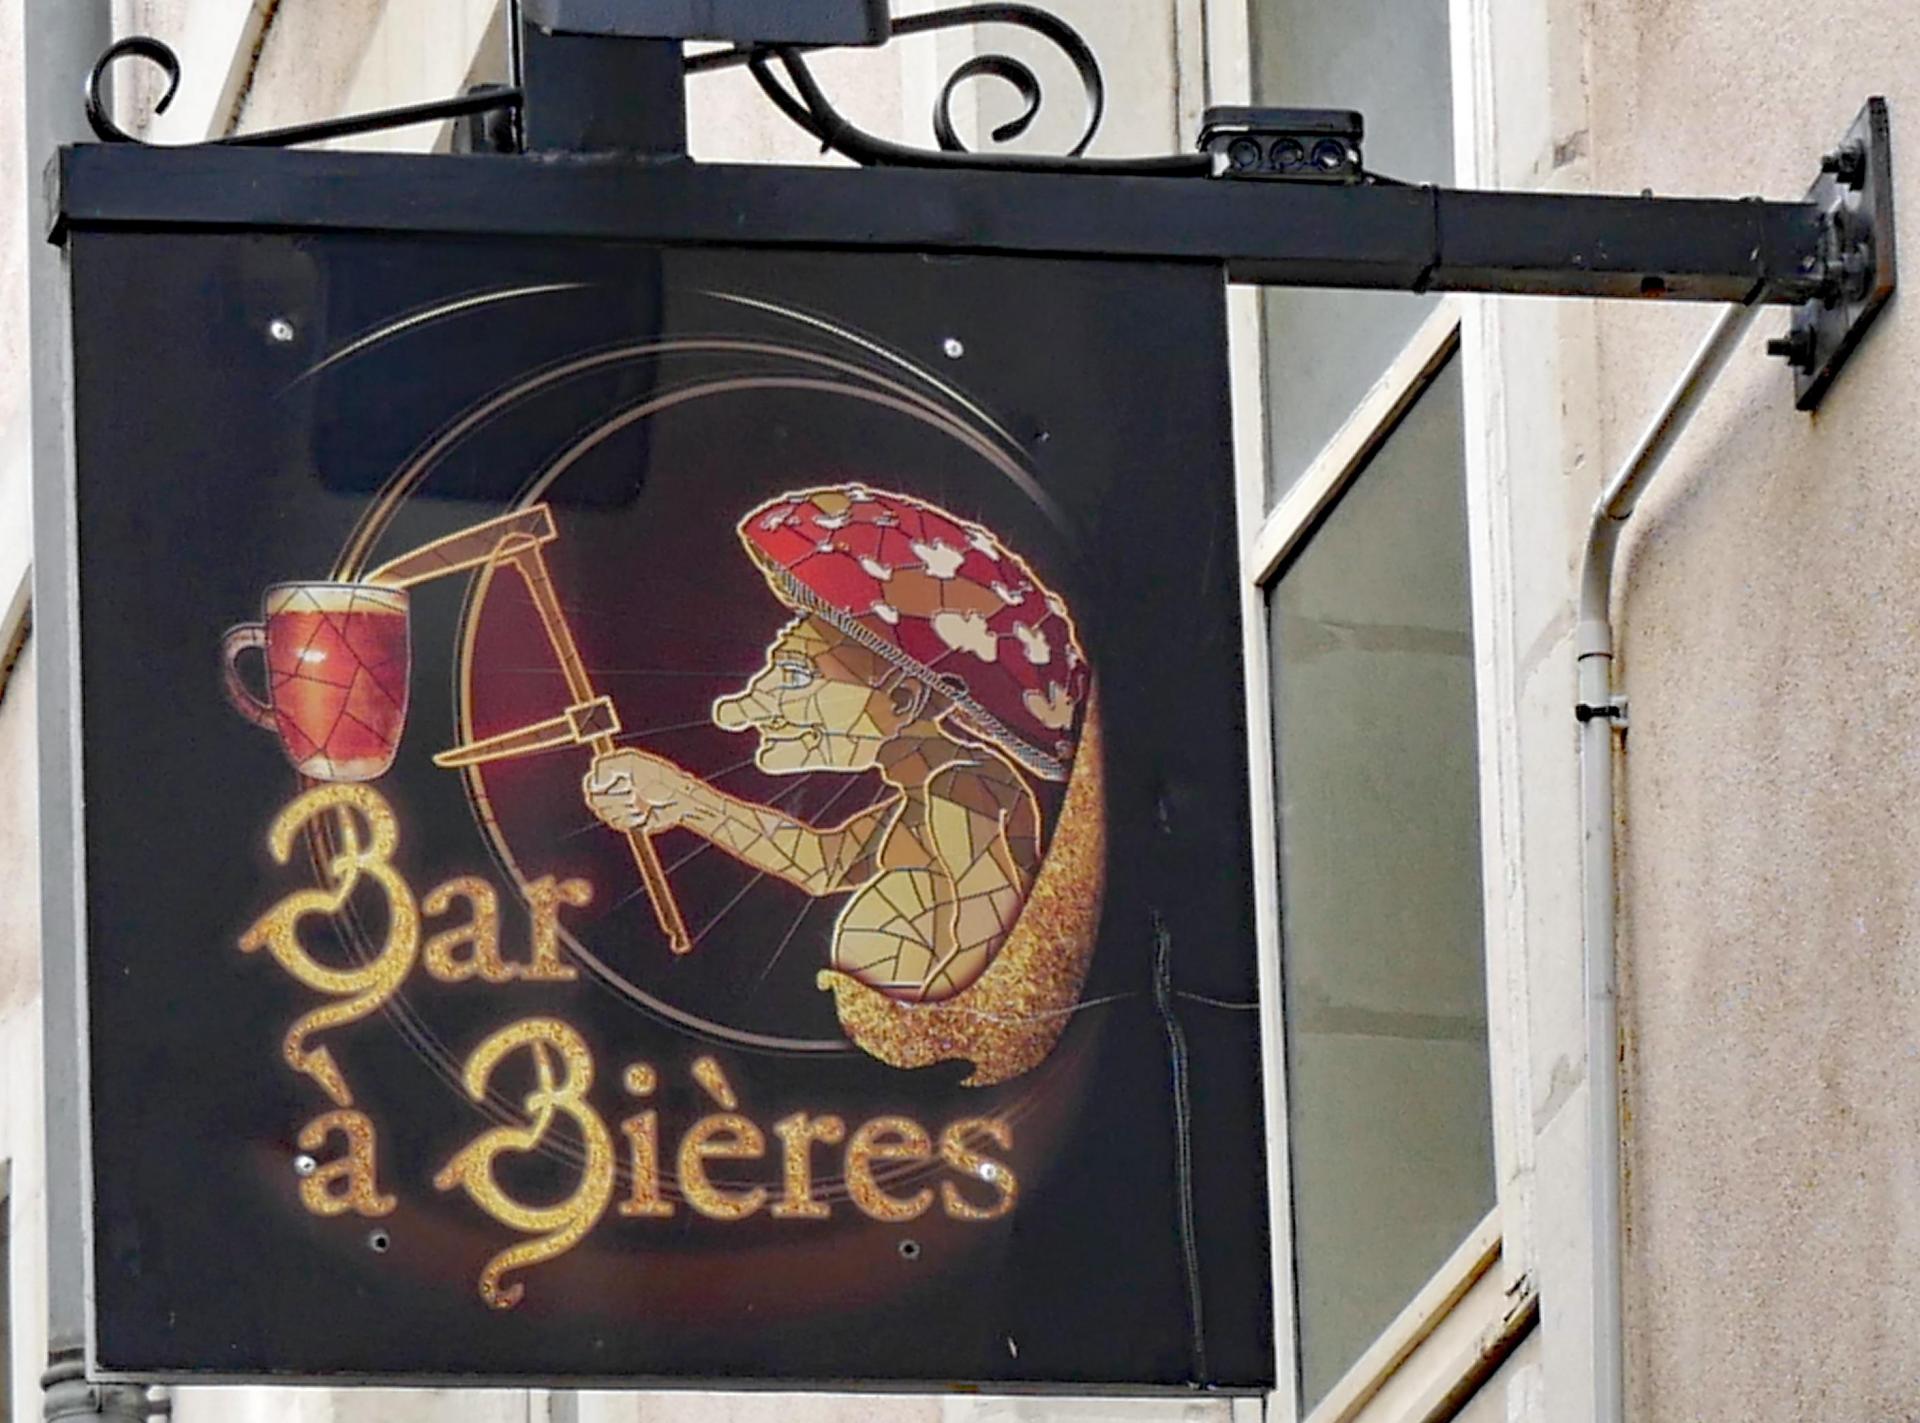 Bar à bières - Nantes